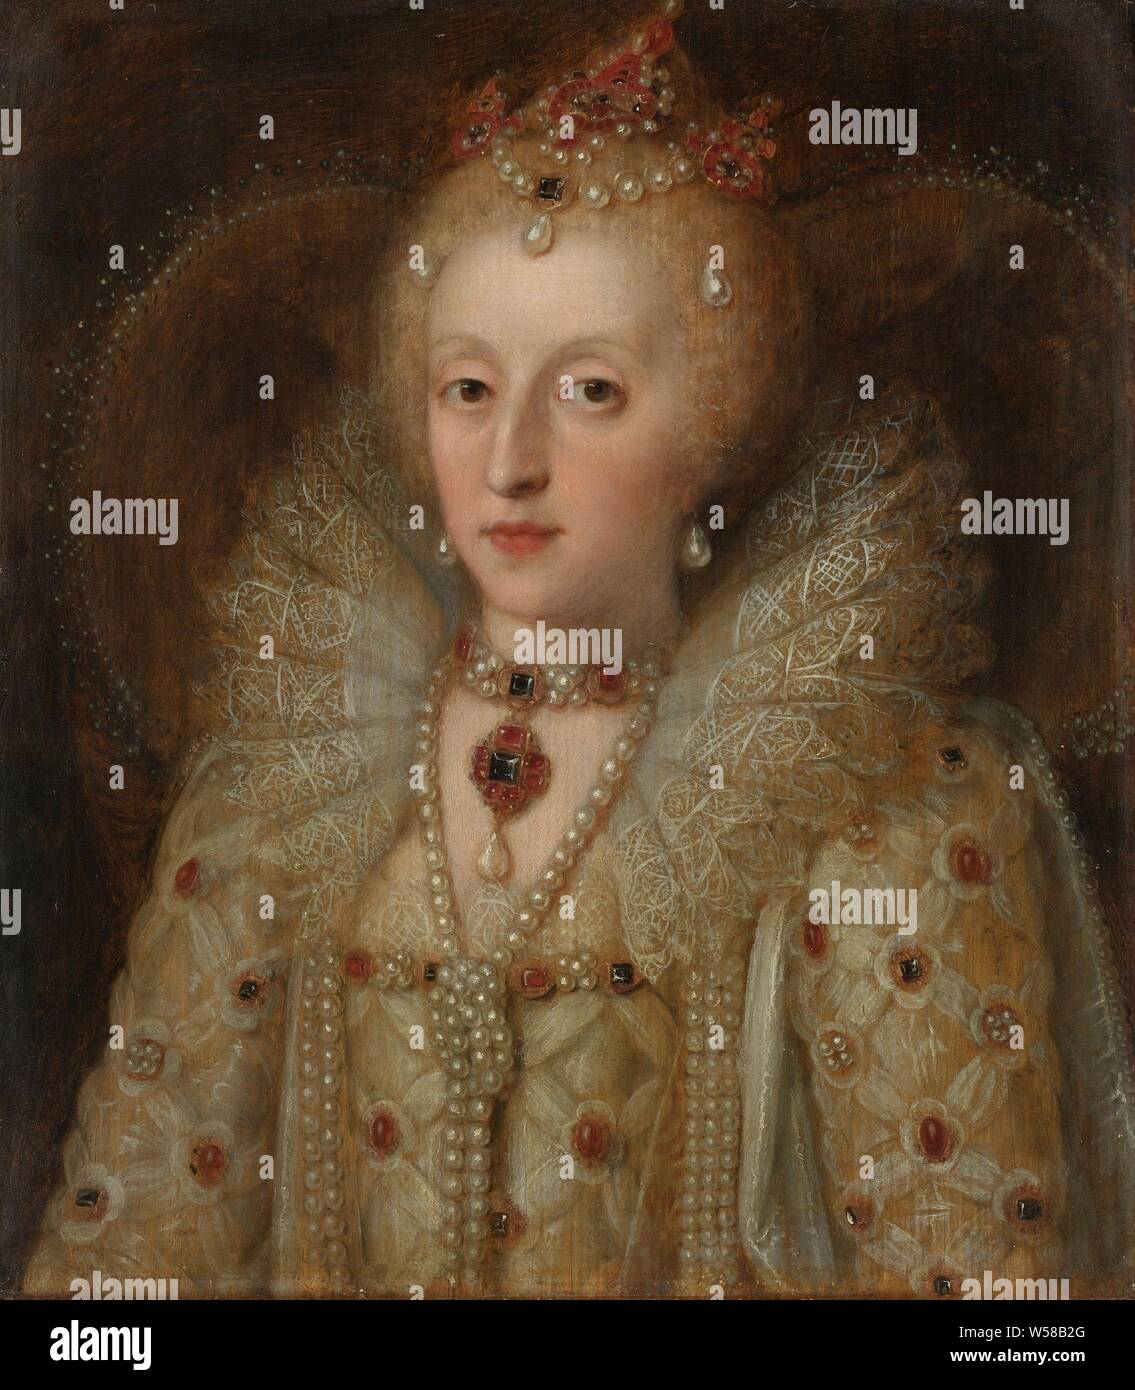 Portrait von Elisabeth I., Königin von England, Porträt von Elisabeth I (1533-1603), Königin von England. Büste, leicht nach links. In Gehrock mit einem offenen Hals, mit Edelsteinen verziert. Sie trägt Schmuck mit Perlen und Edelsteine um den Hals und Kopf, Niederlande, Elizabeth I Tudor (Königin von England), Republik der Sieben Vereinigten Niederlande, anonym, England, 1550-1599, Panel, Ölfarbe (Lack), h 34,5 cm x W 30,5 cm d 5,5 cm Stockfoto